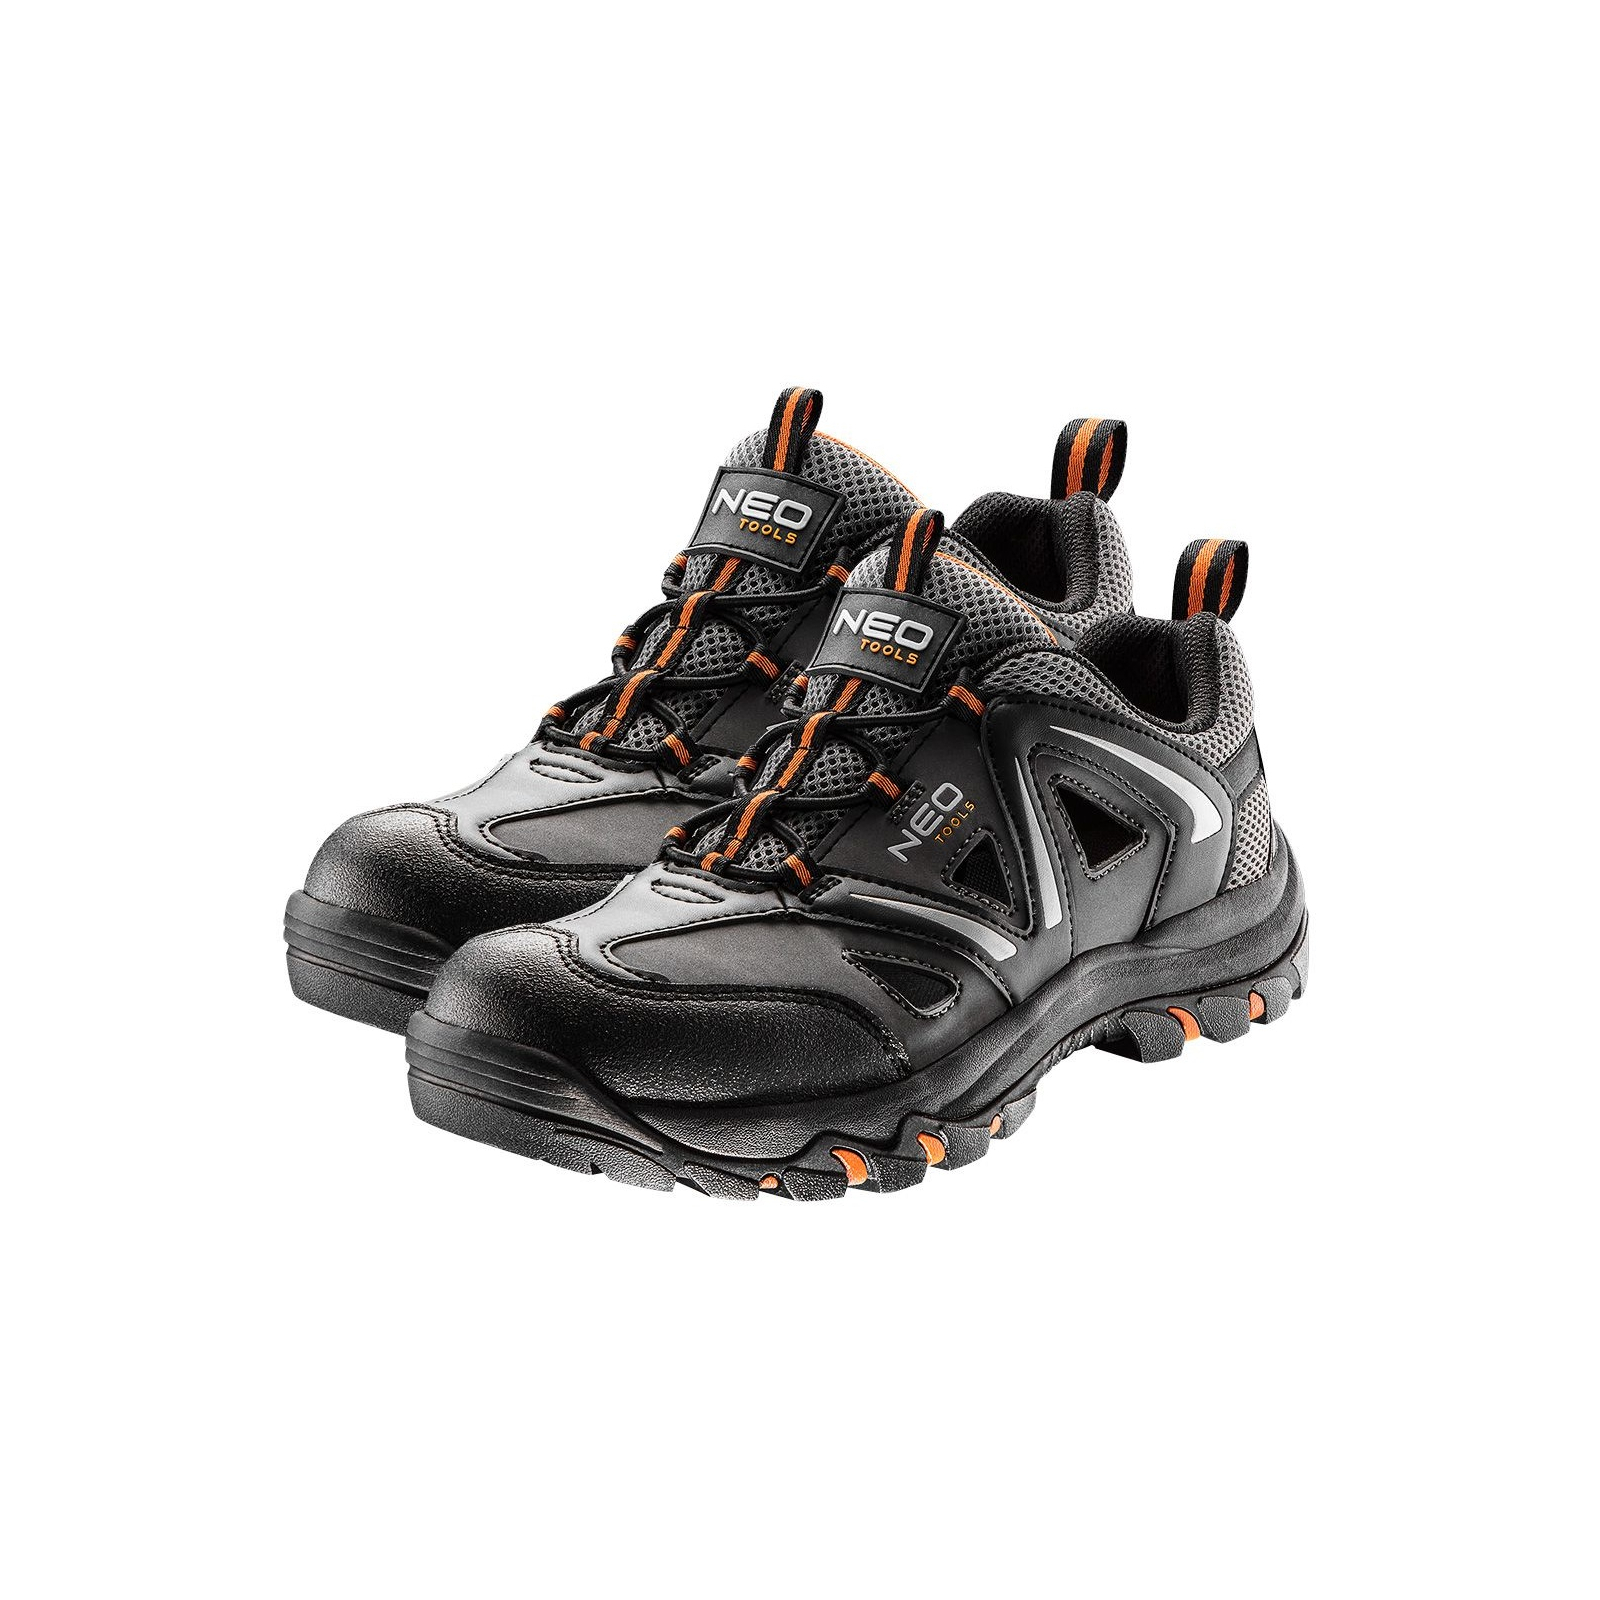 Ботинки рабочие Neo Tools кроссовки дышащие, подошва EVA, класс защиты OB, SRA, р.39 (82-720)